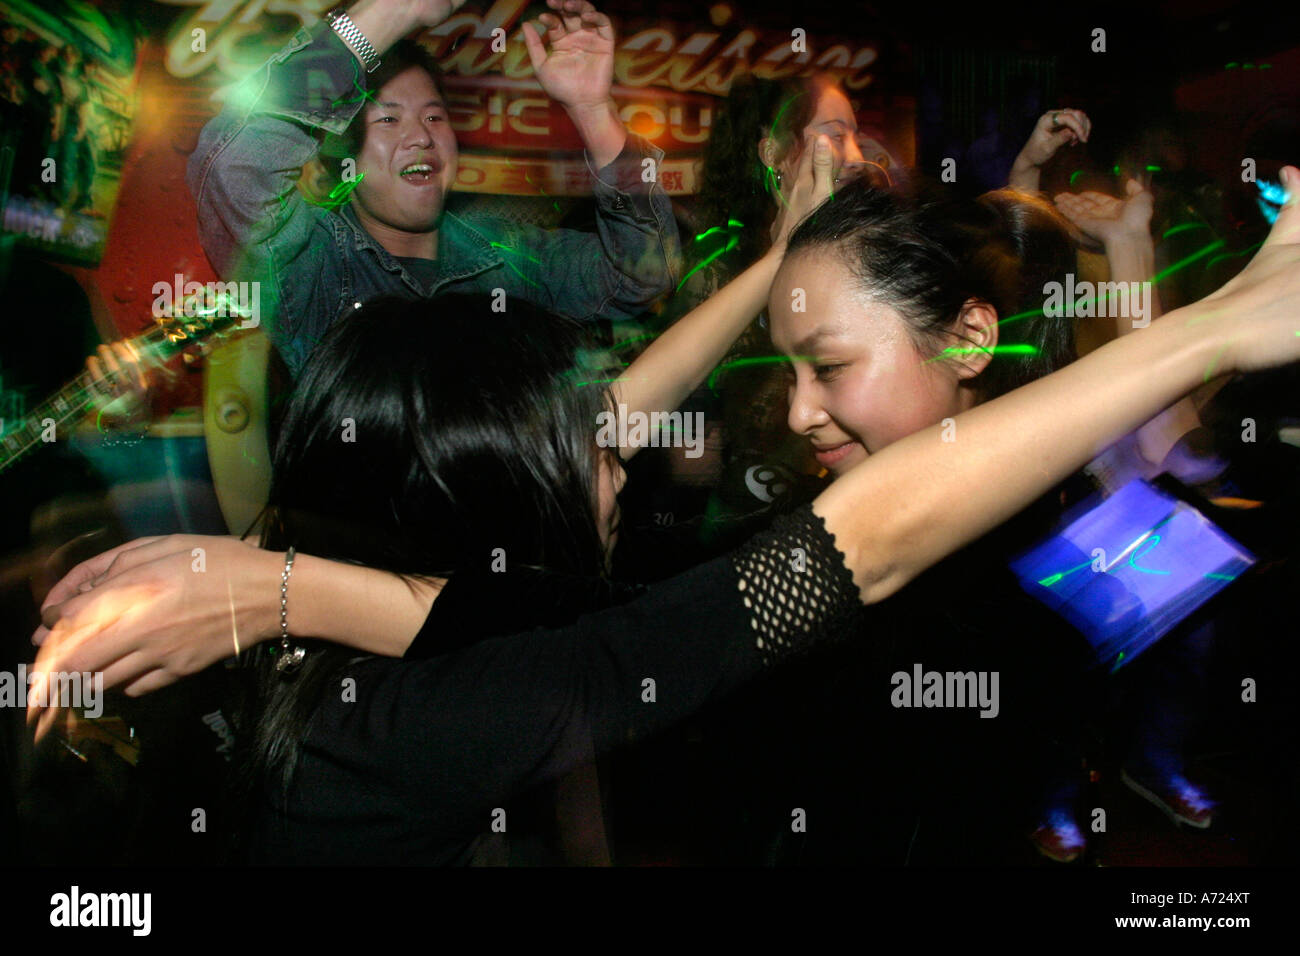 Young women having fun in a club Stock Photo